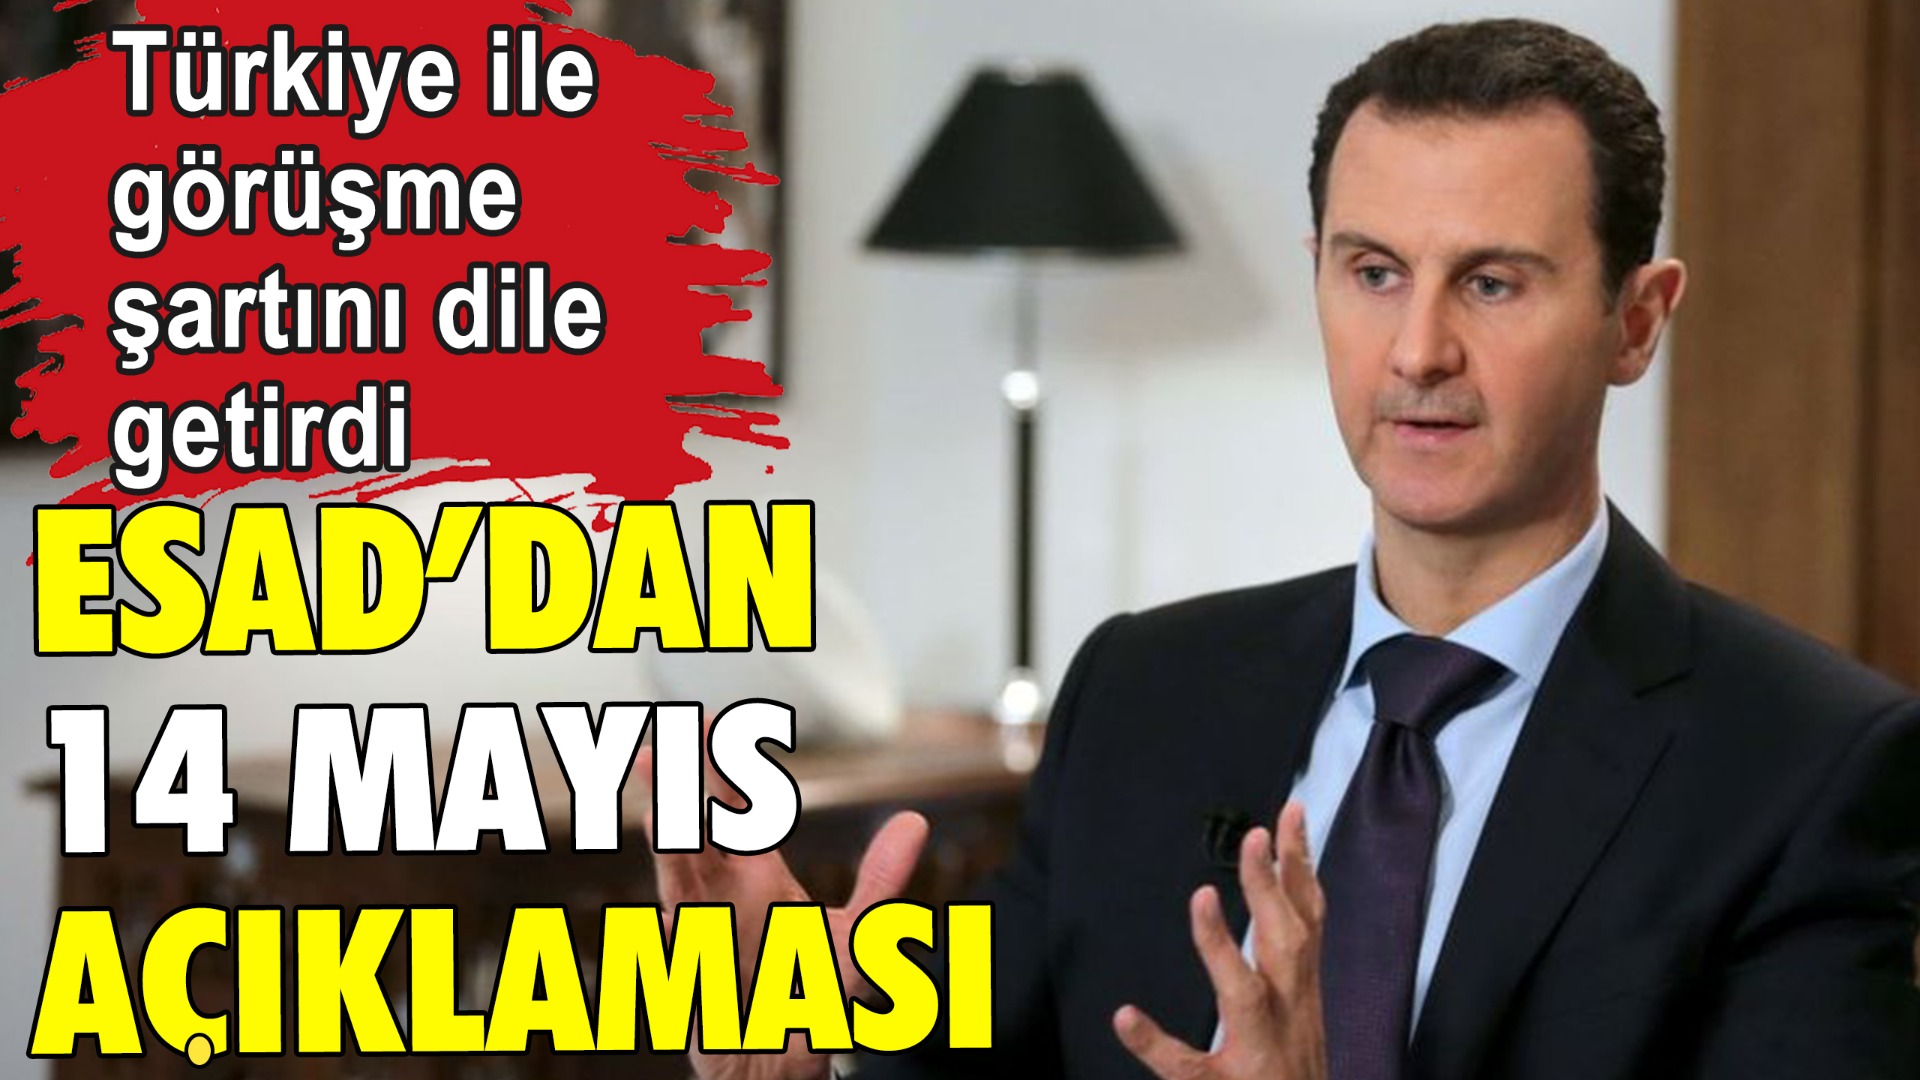 Esad'dan 14 mayıs seçimlerine ilişkin açıklama: Türkiye ile görüşme şartını dile getirdi